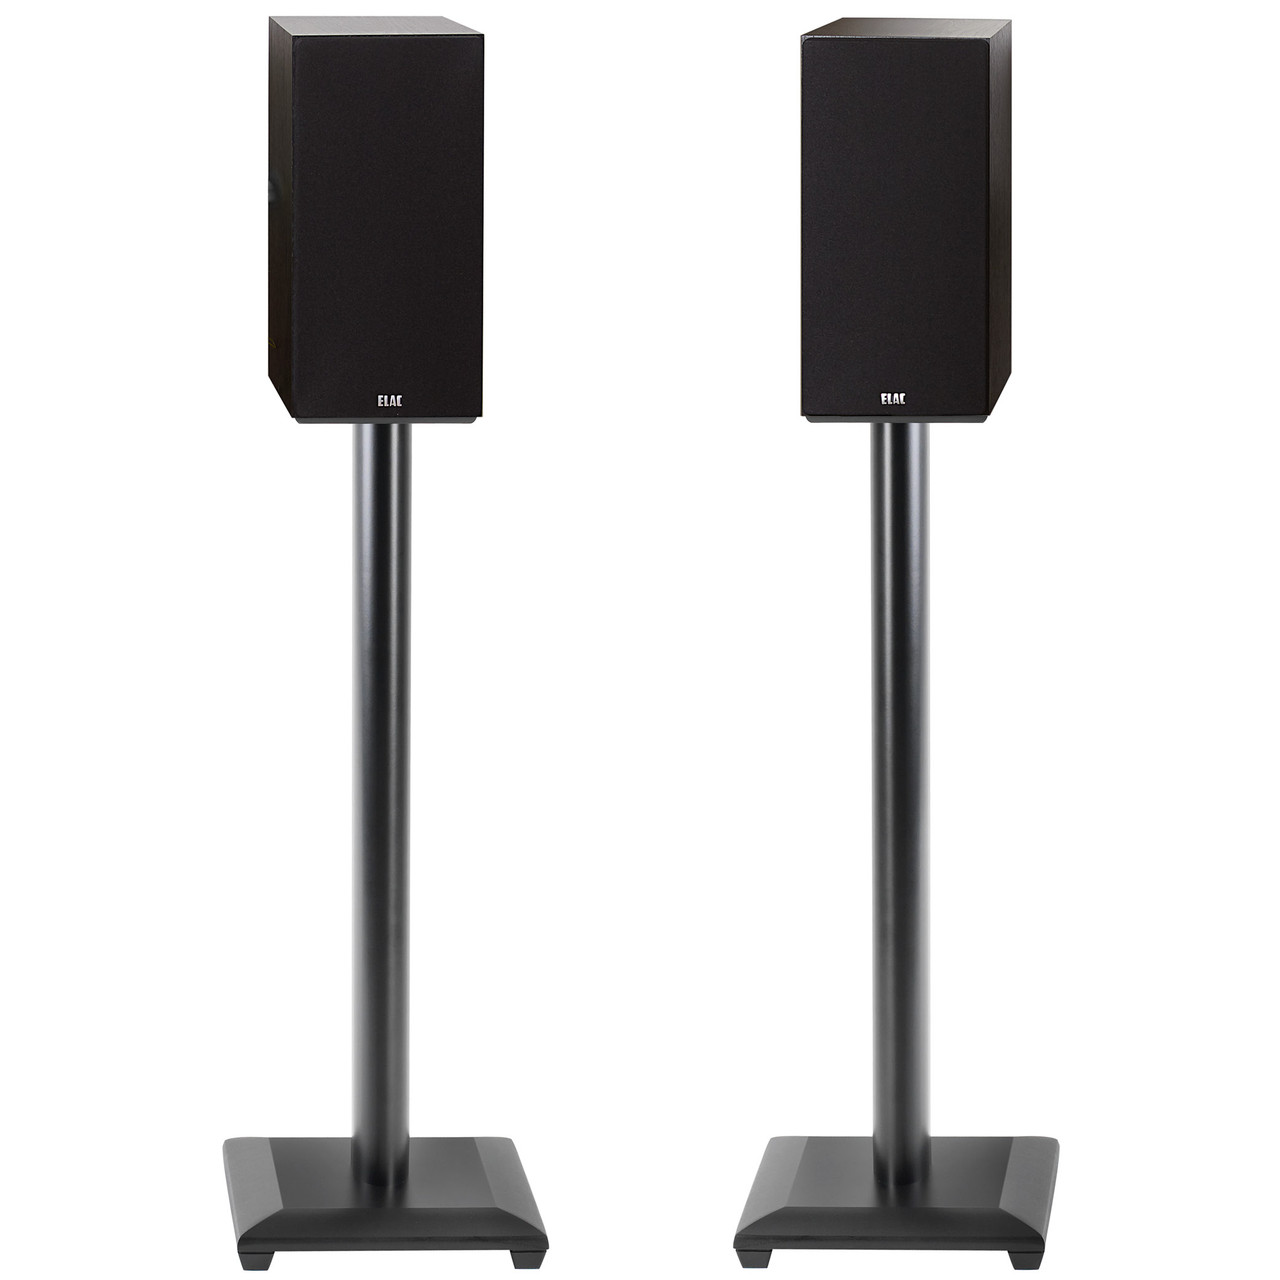 4 Pack of Premium Universal Black Satellite Surround Speaker Floor Stands